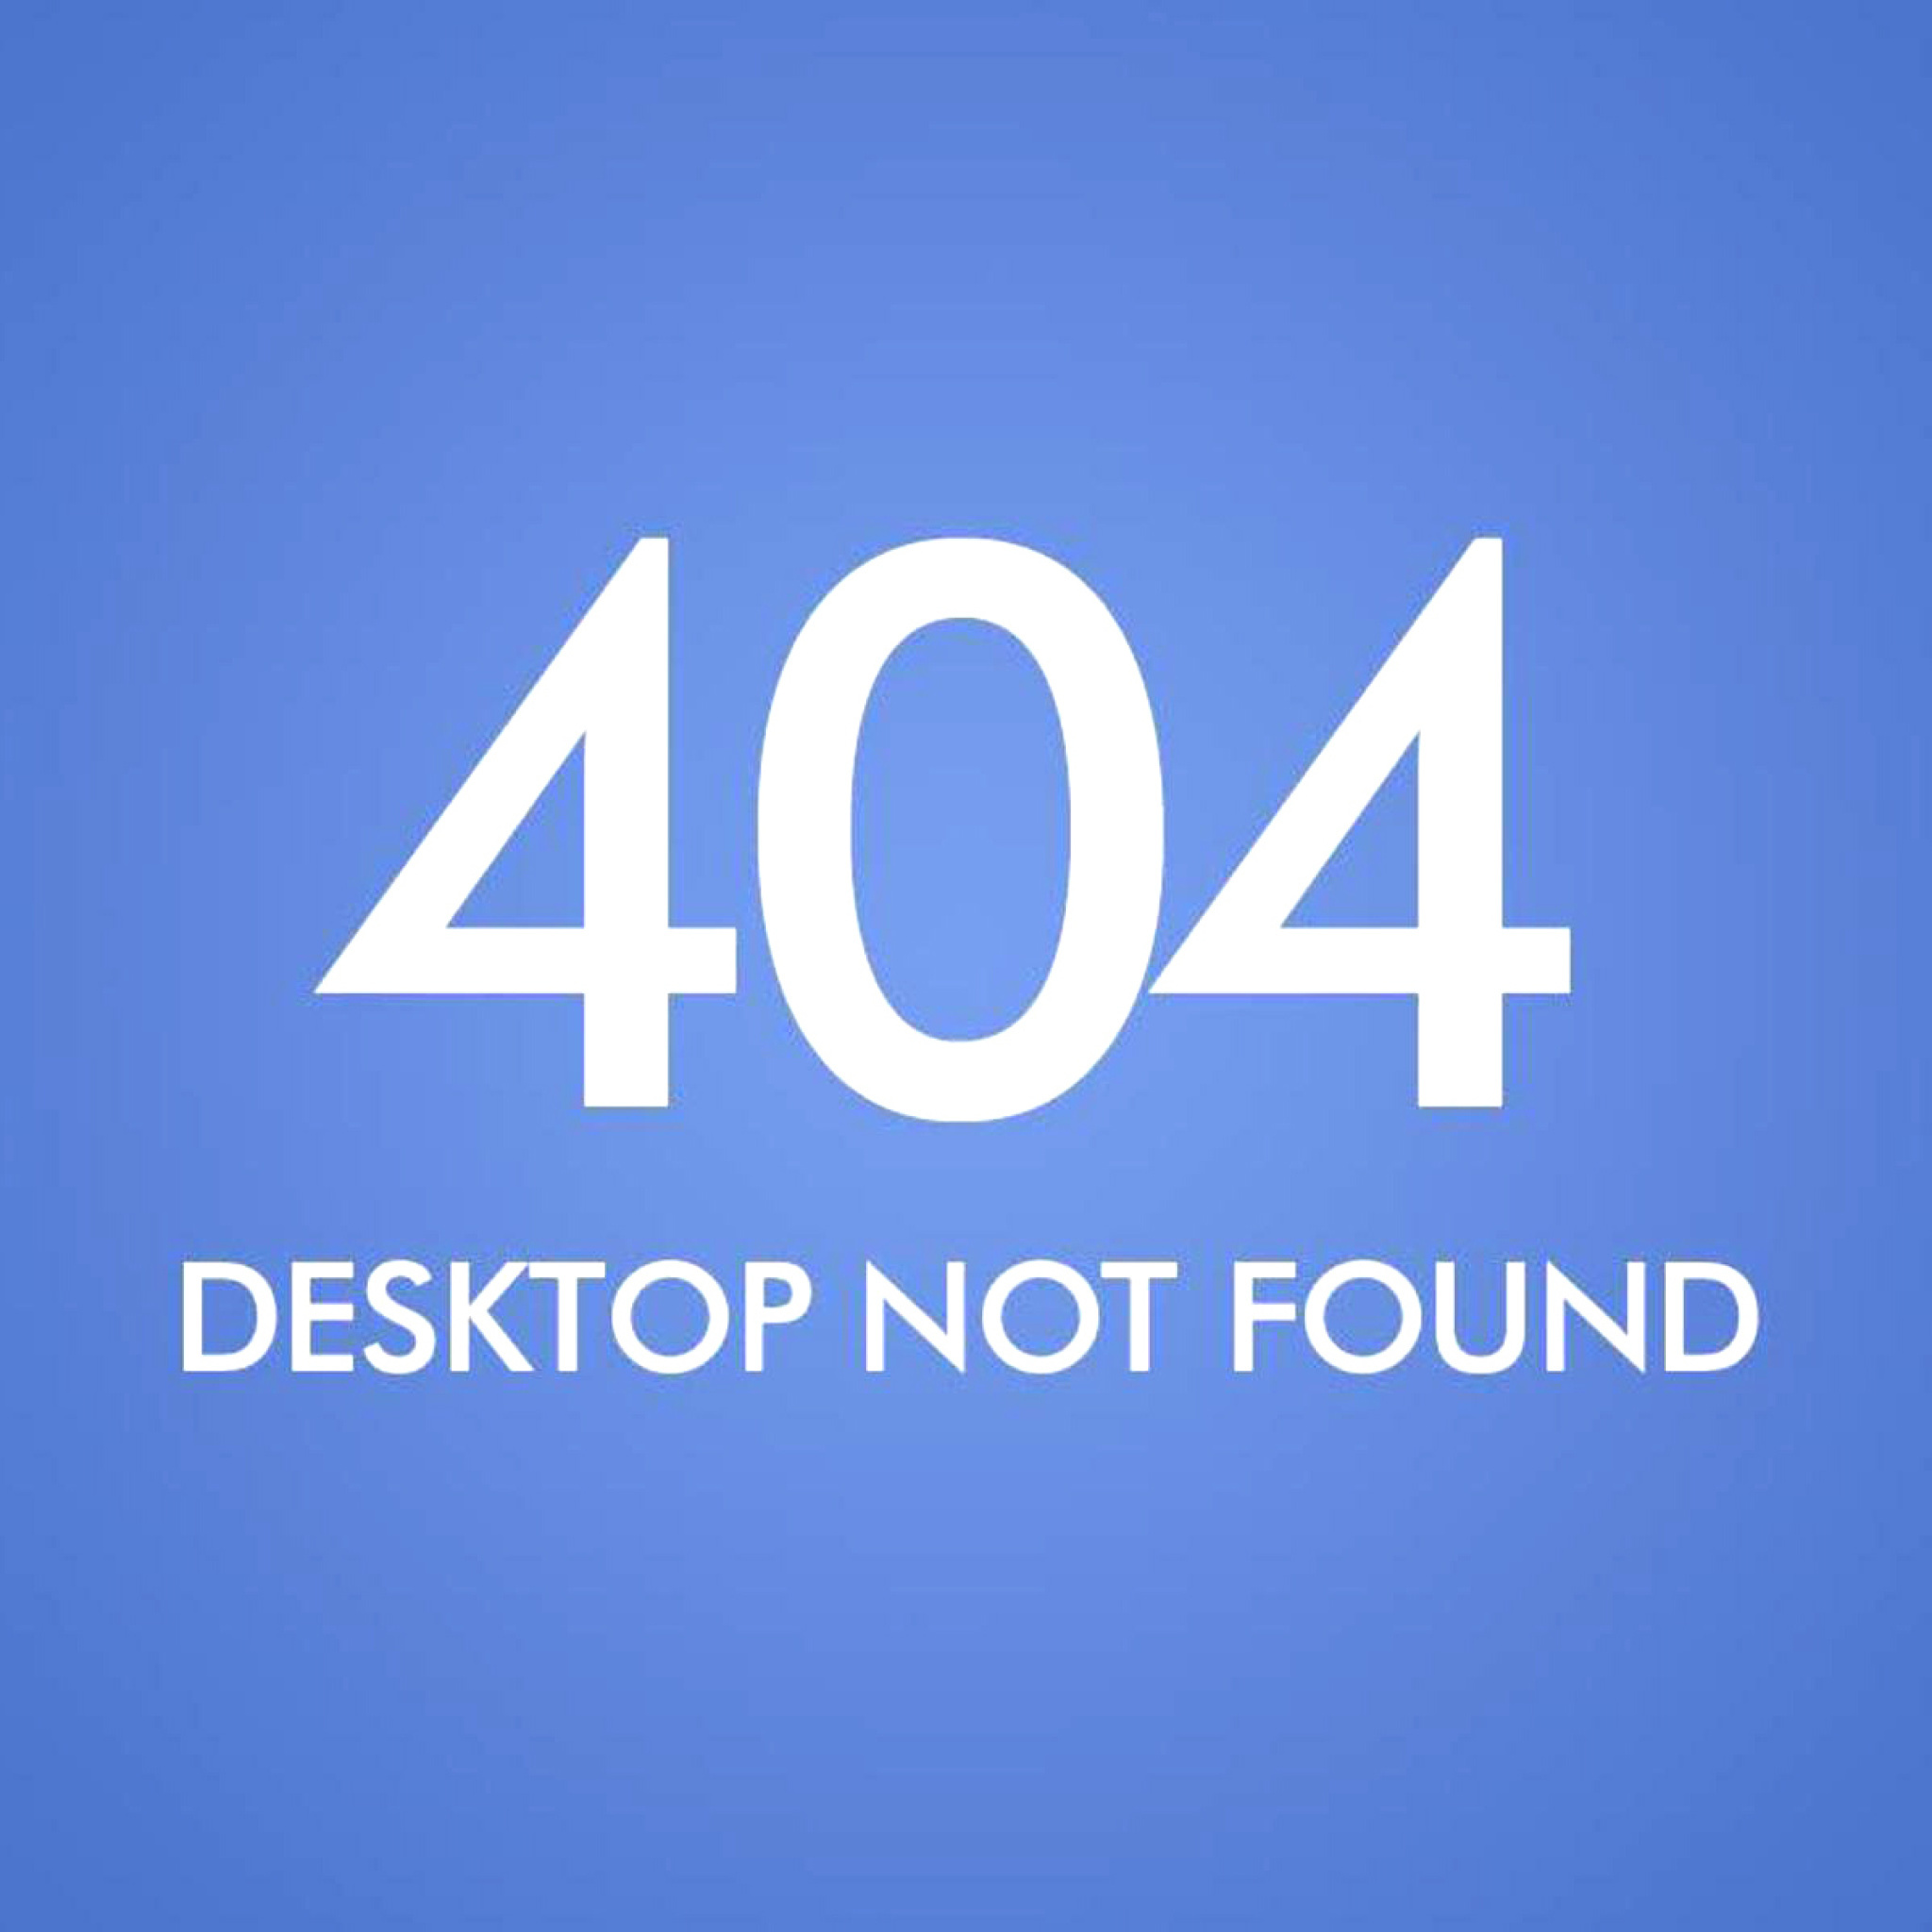 404 Desktop Not Found wallpaper 2048x2048